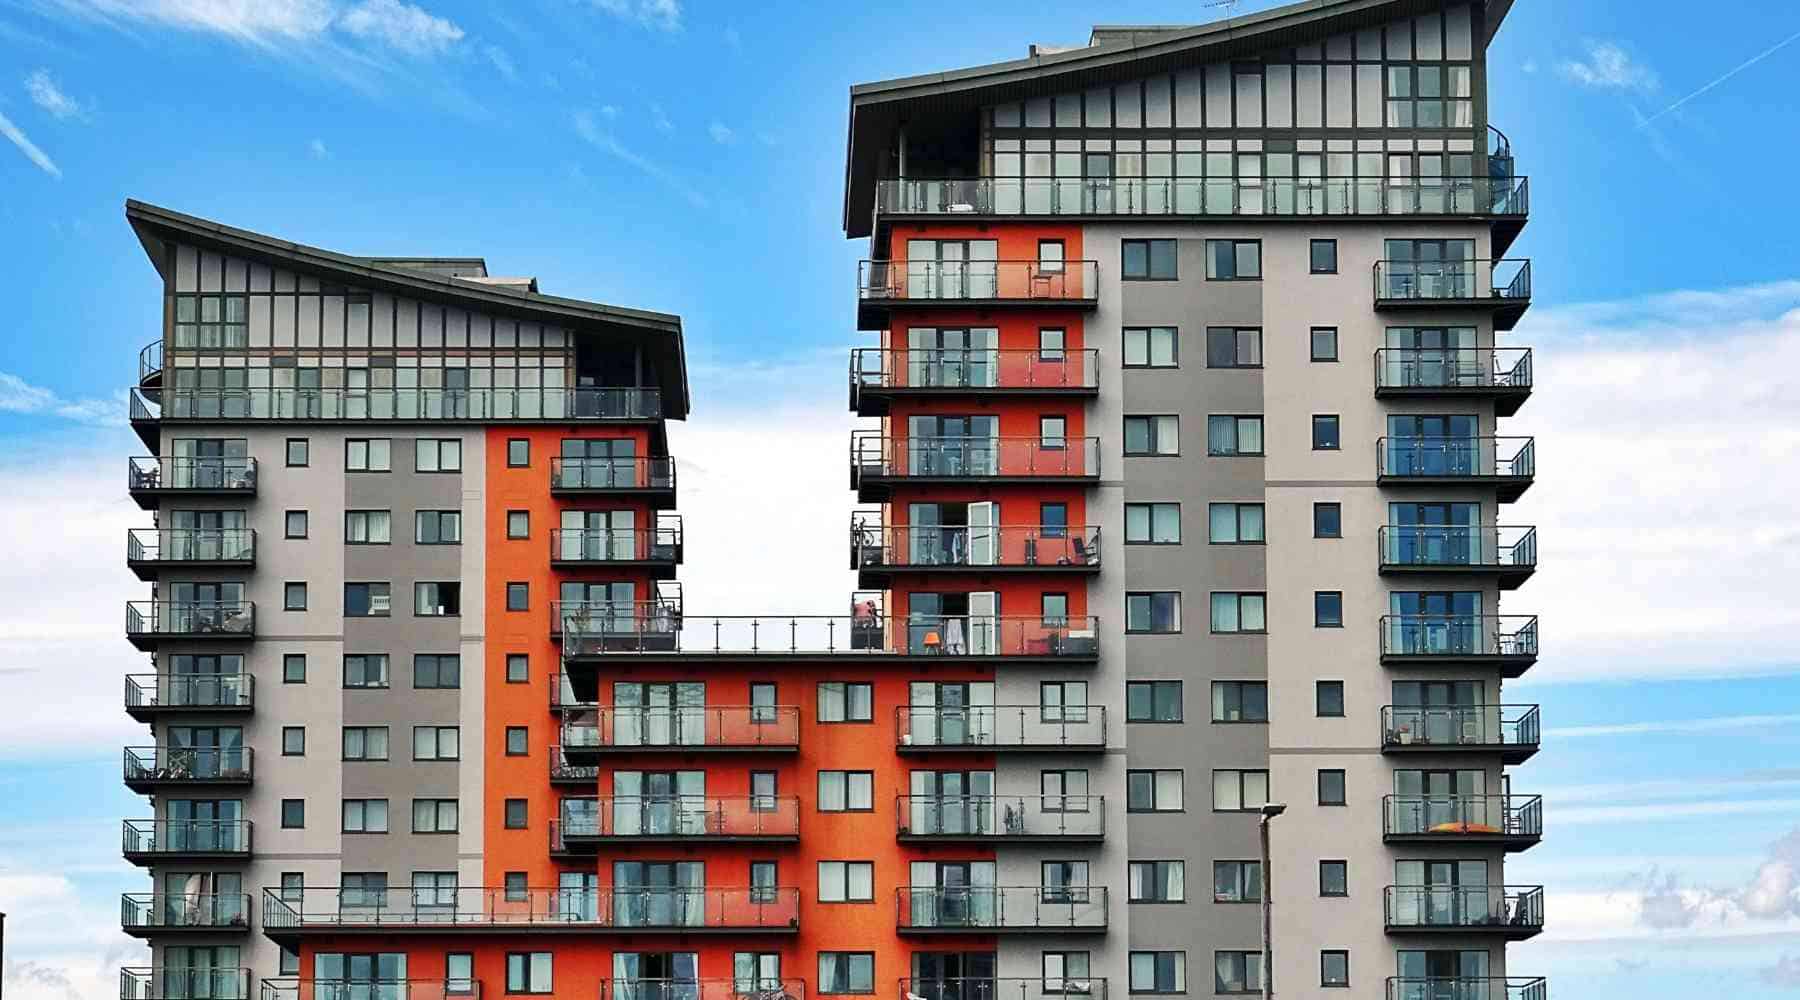 Apartments vs Home